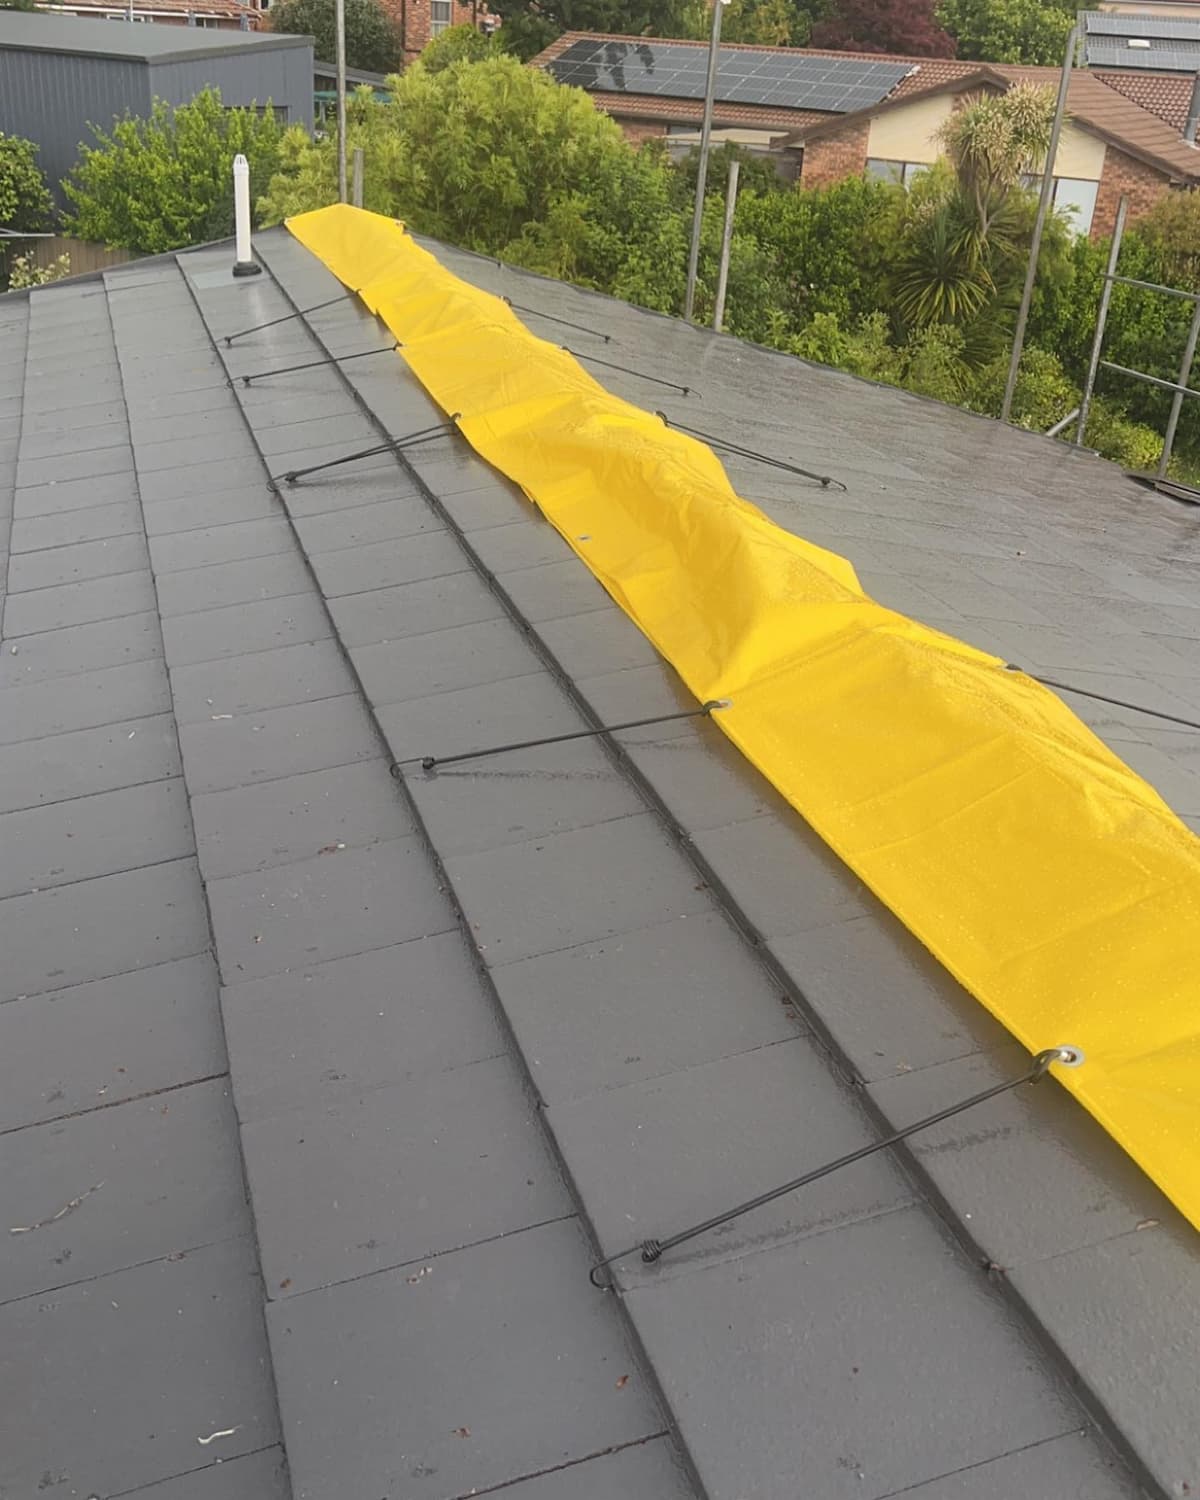 Asphalt Shingle Roof - Roof Tiling In Orange, NSW